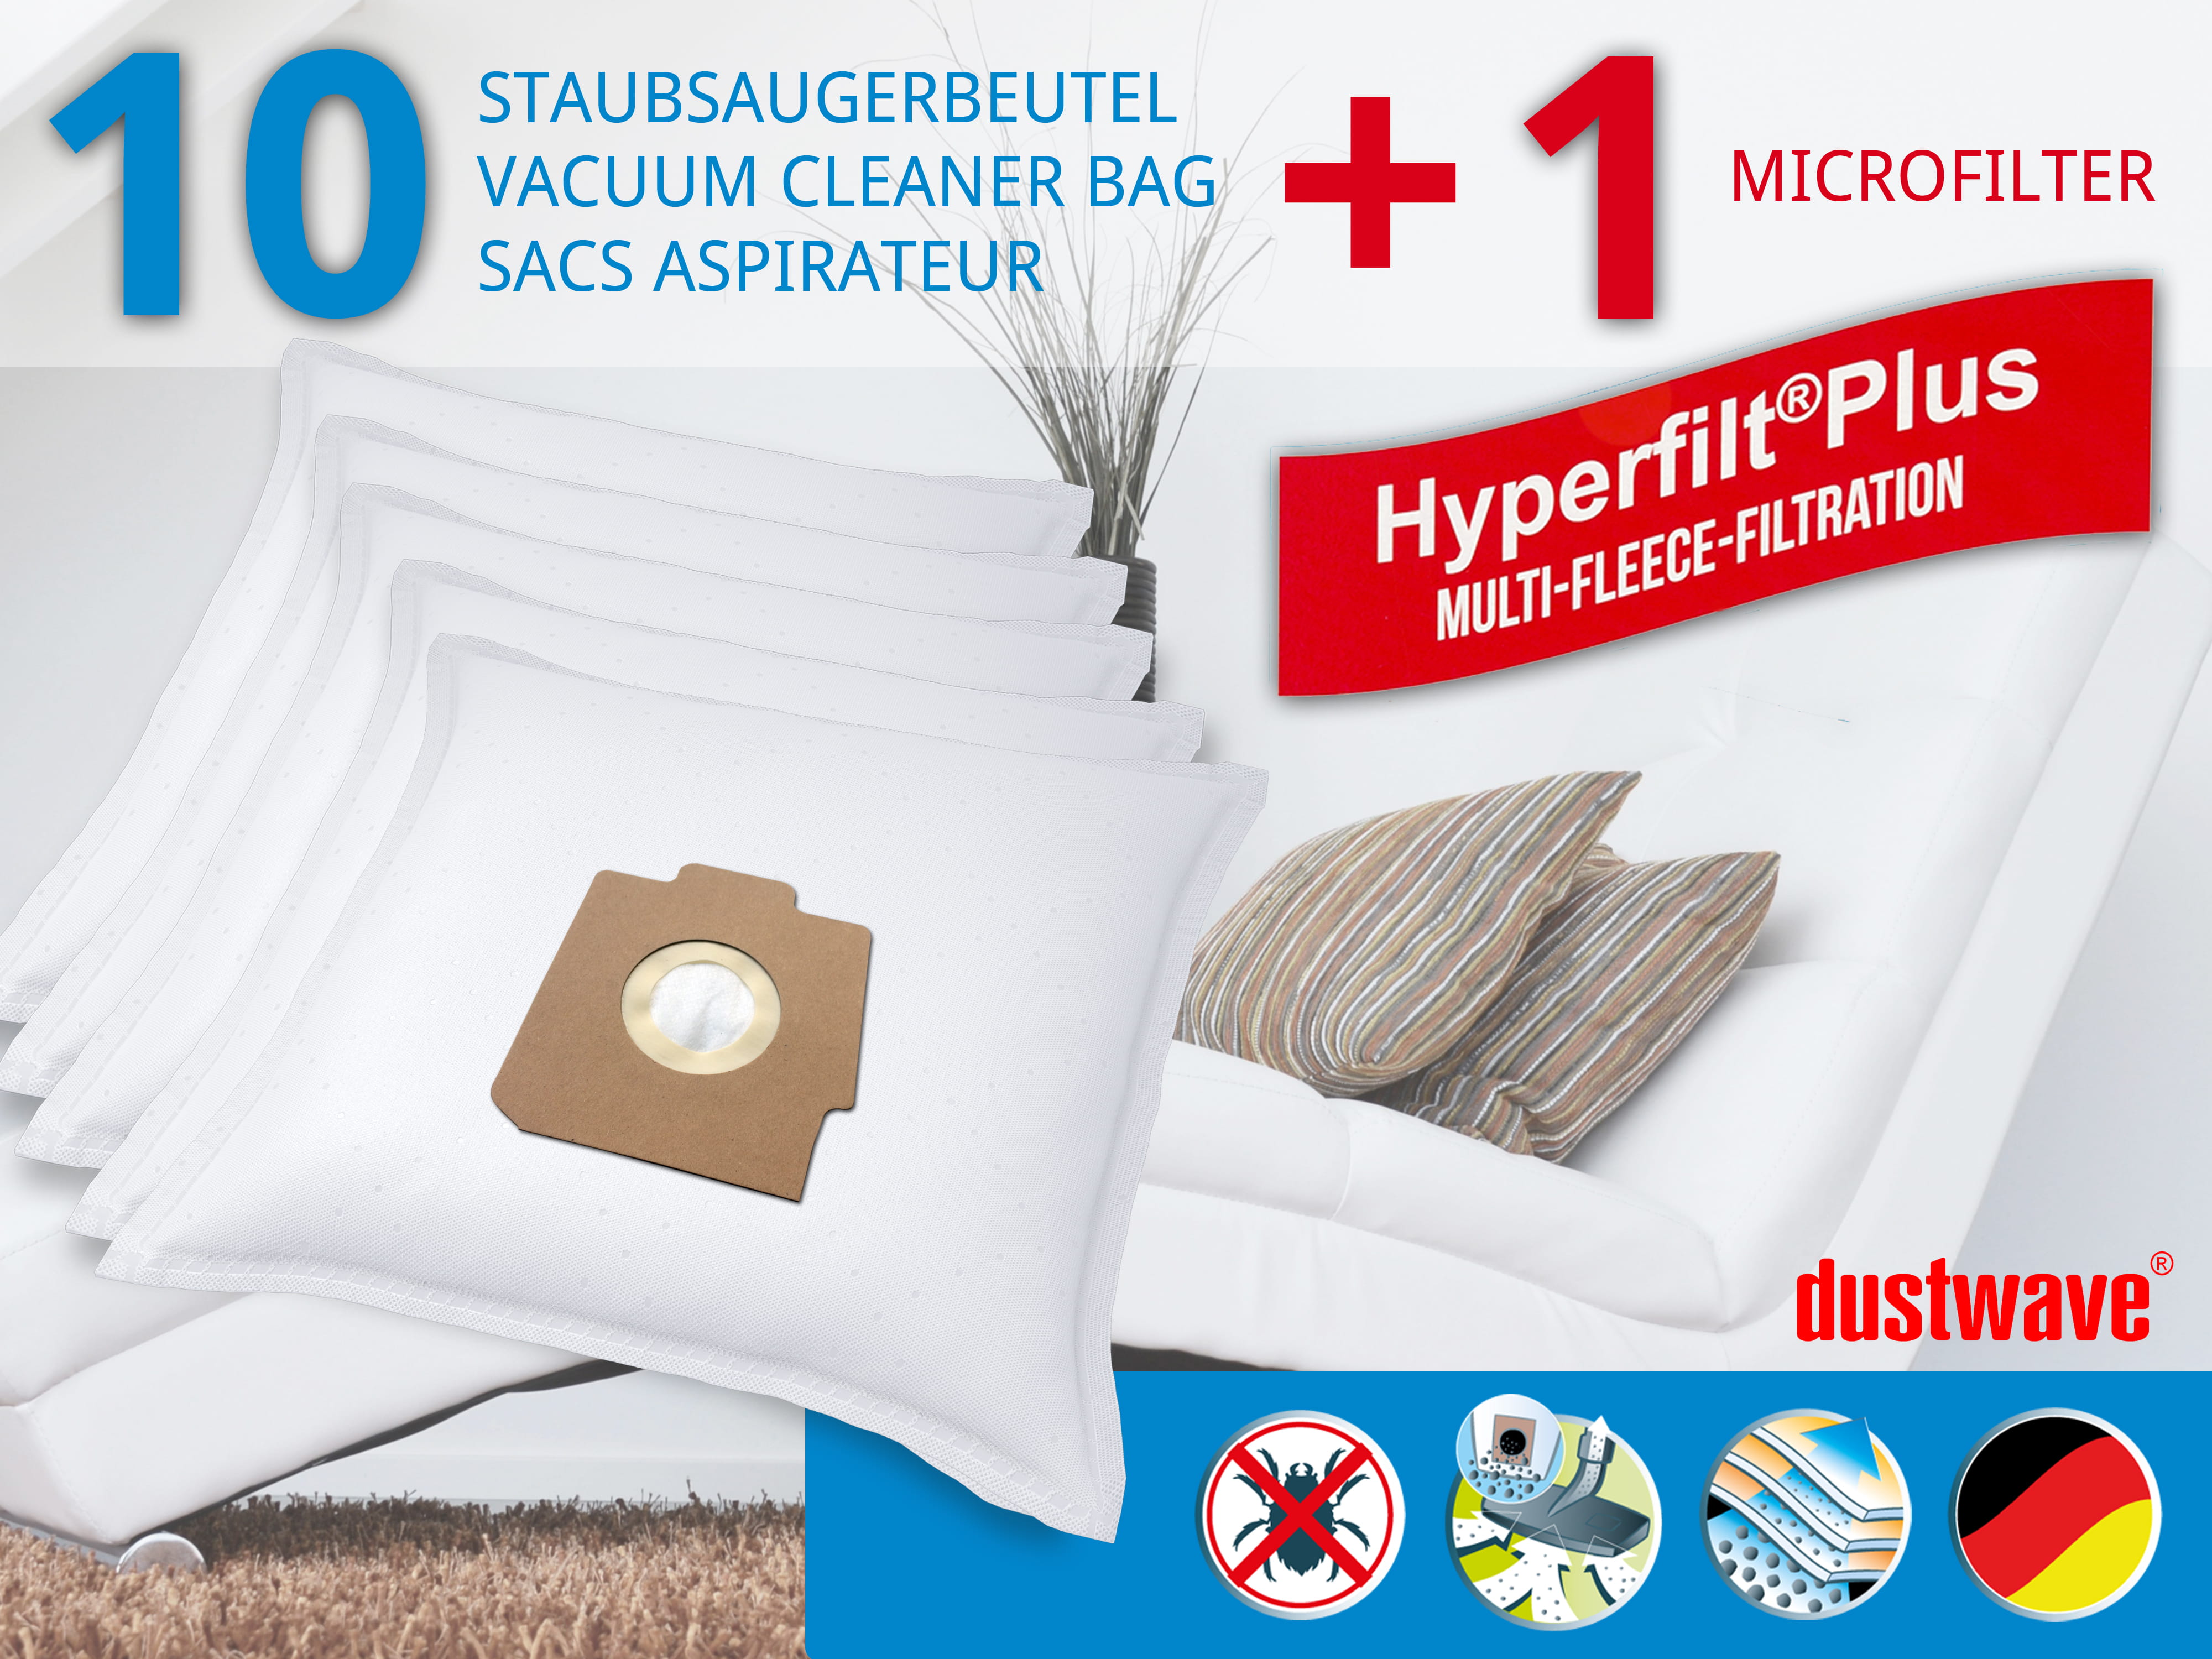 Dustwave® 10 Staubsaugerbeutel für Hoover SC344... / TRSC344 Alpina - hocheffizient, mehrlagiges Mikrovlies mit Hygieneverschluss - Made in Germany